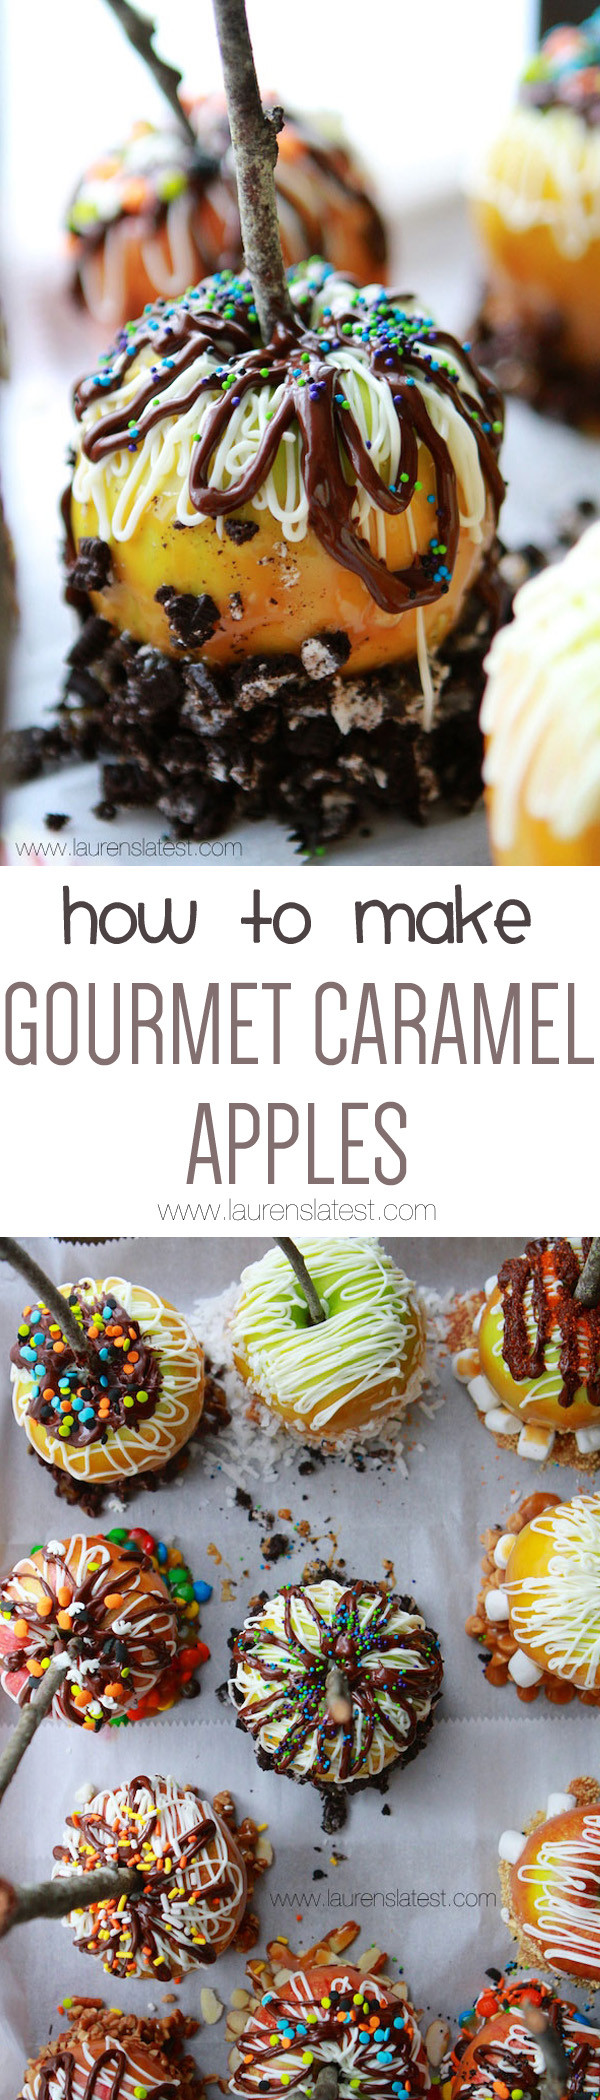 Gourmet Carmel Apple Recipes
 Gourmet Caramel Apples Recipe